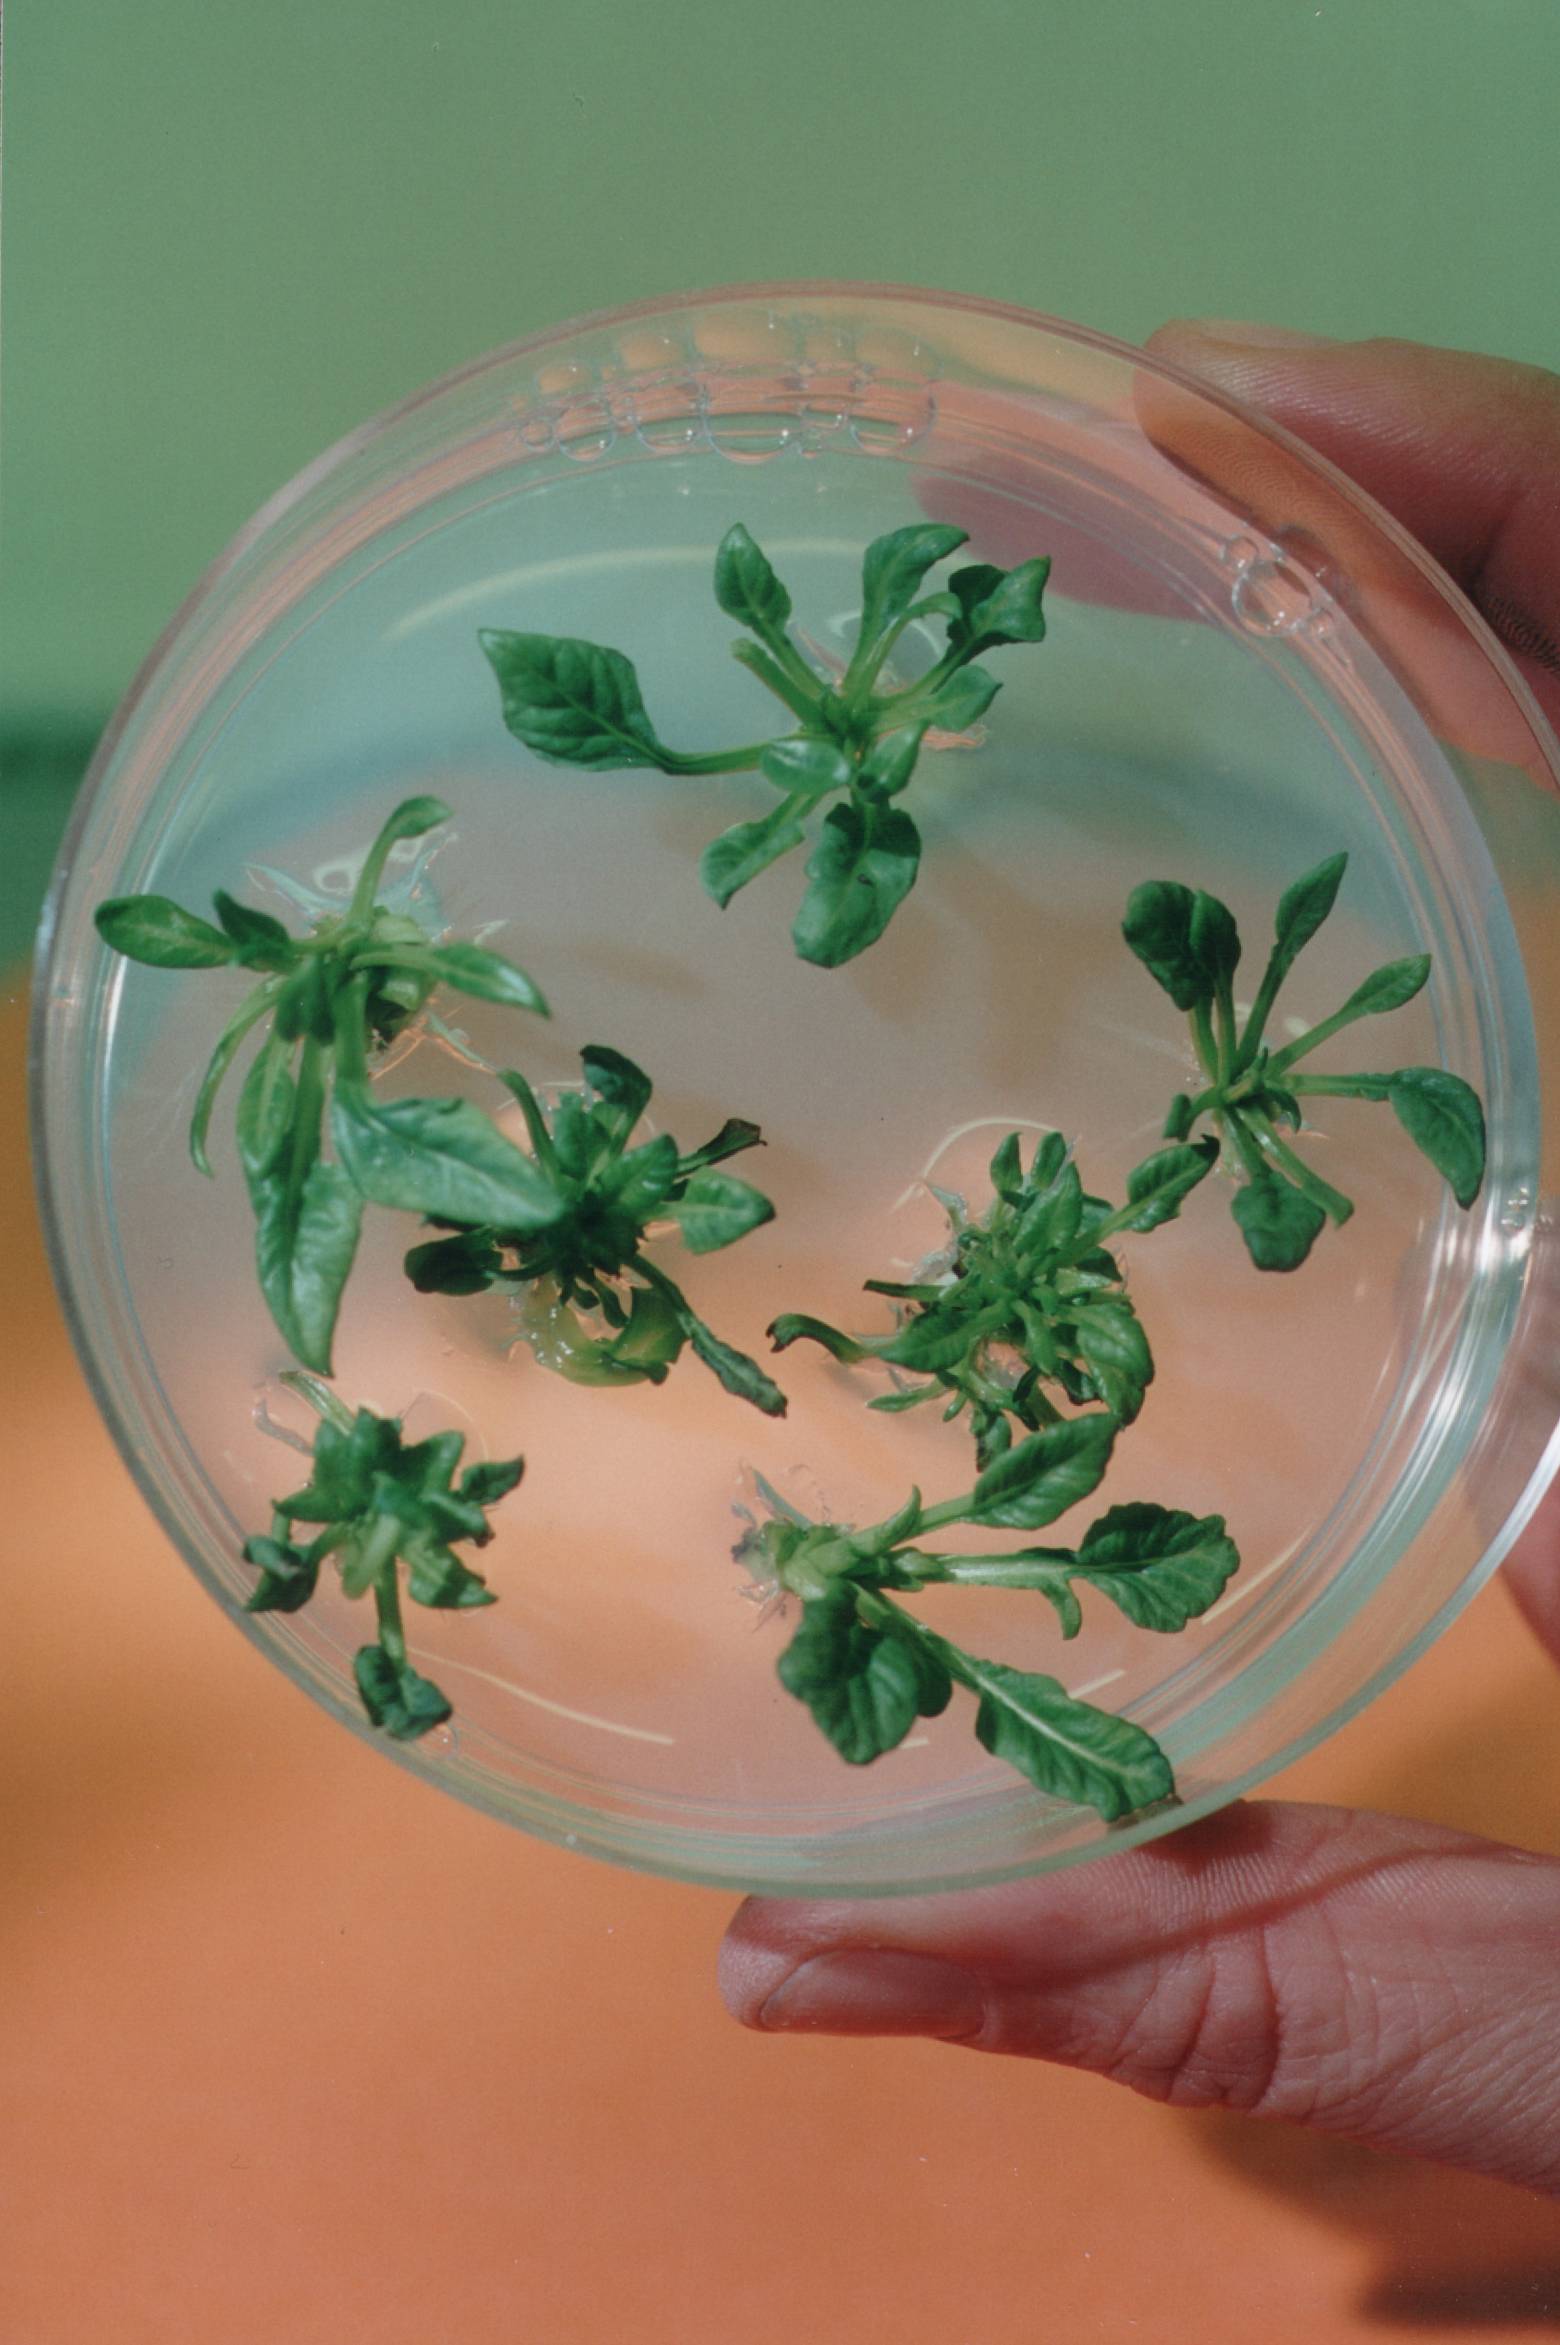 Petrischale mit in-vitro gezüchteten Zuckerrüben-Pflänzchen